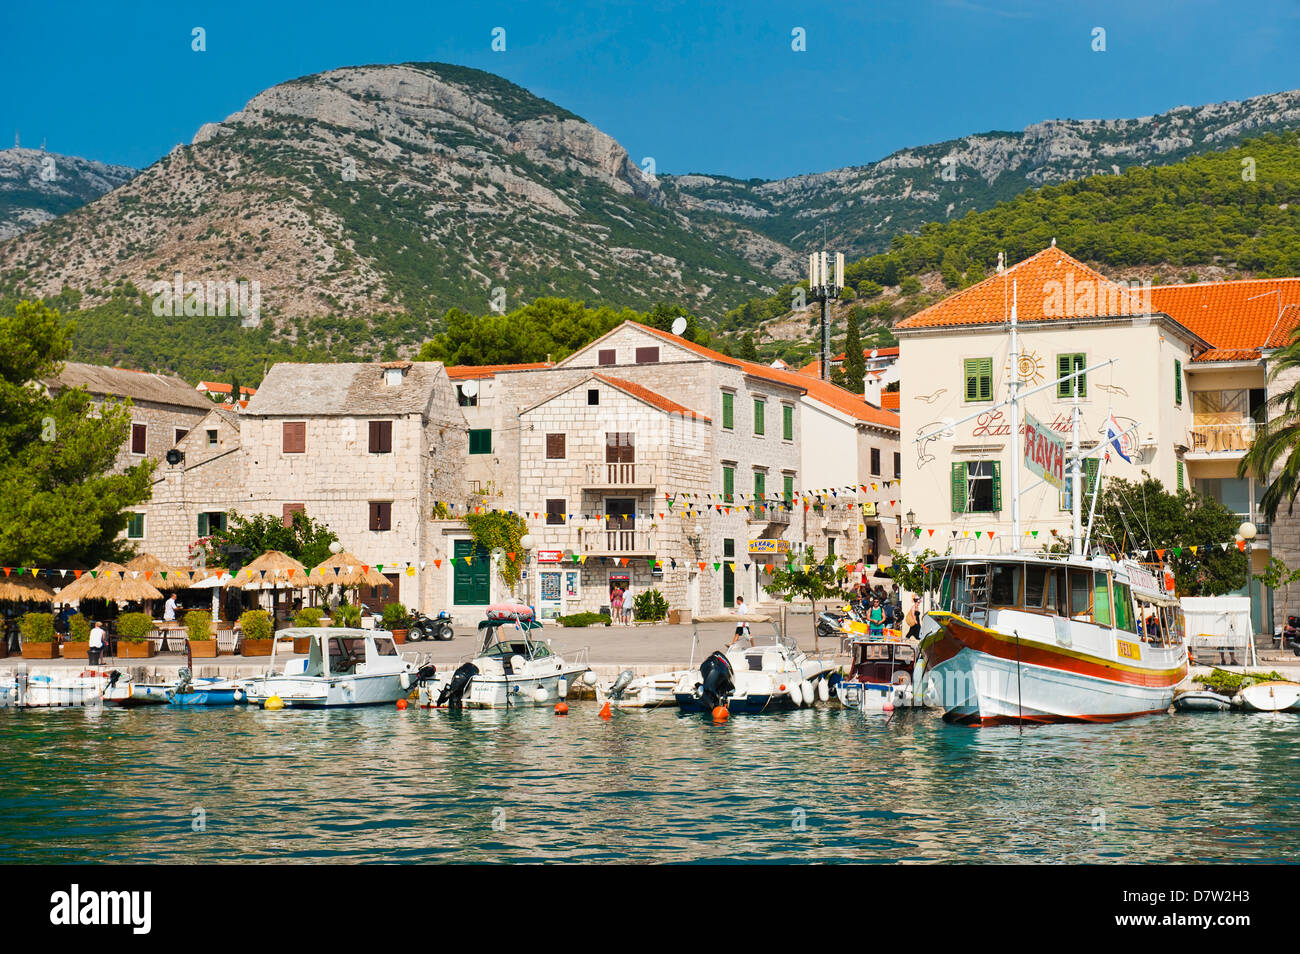 La ville de Bol, Île de Brac, la côte dalmate, Adriatique, Croatie Banque D'Images